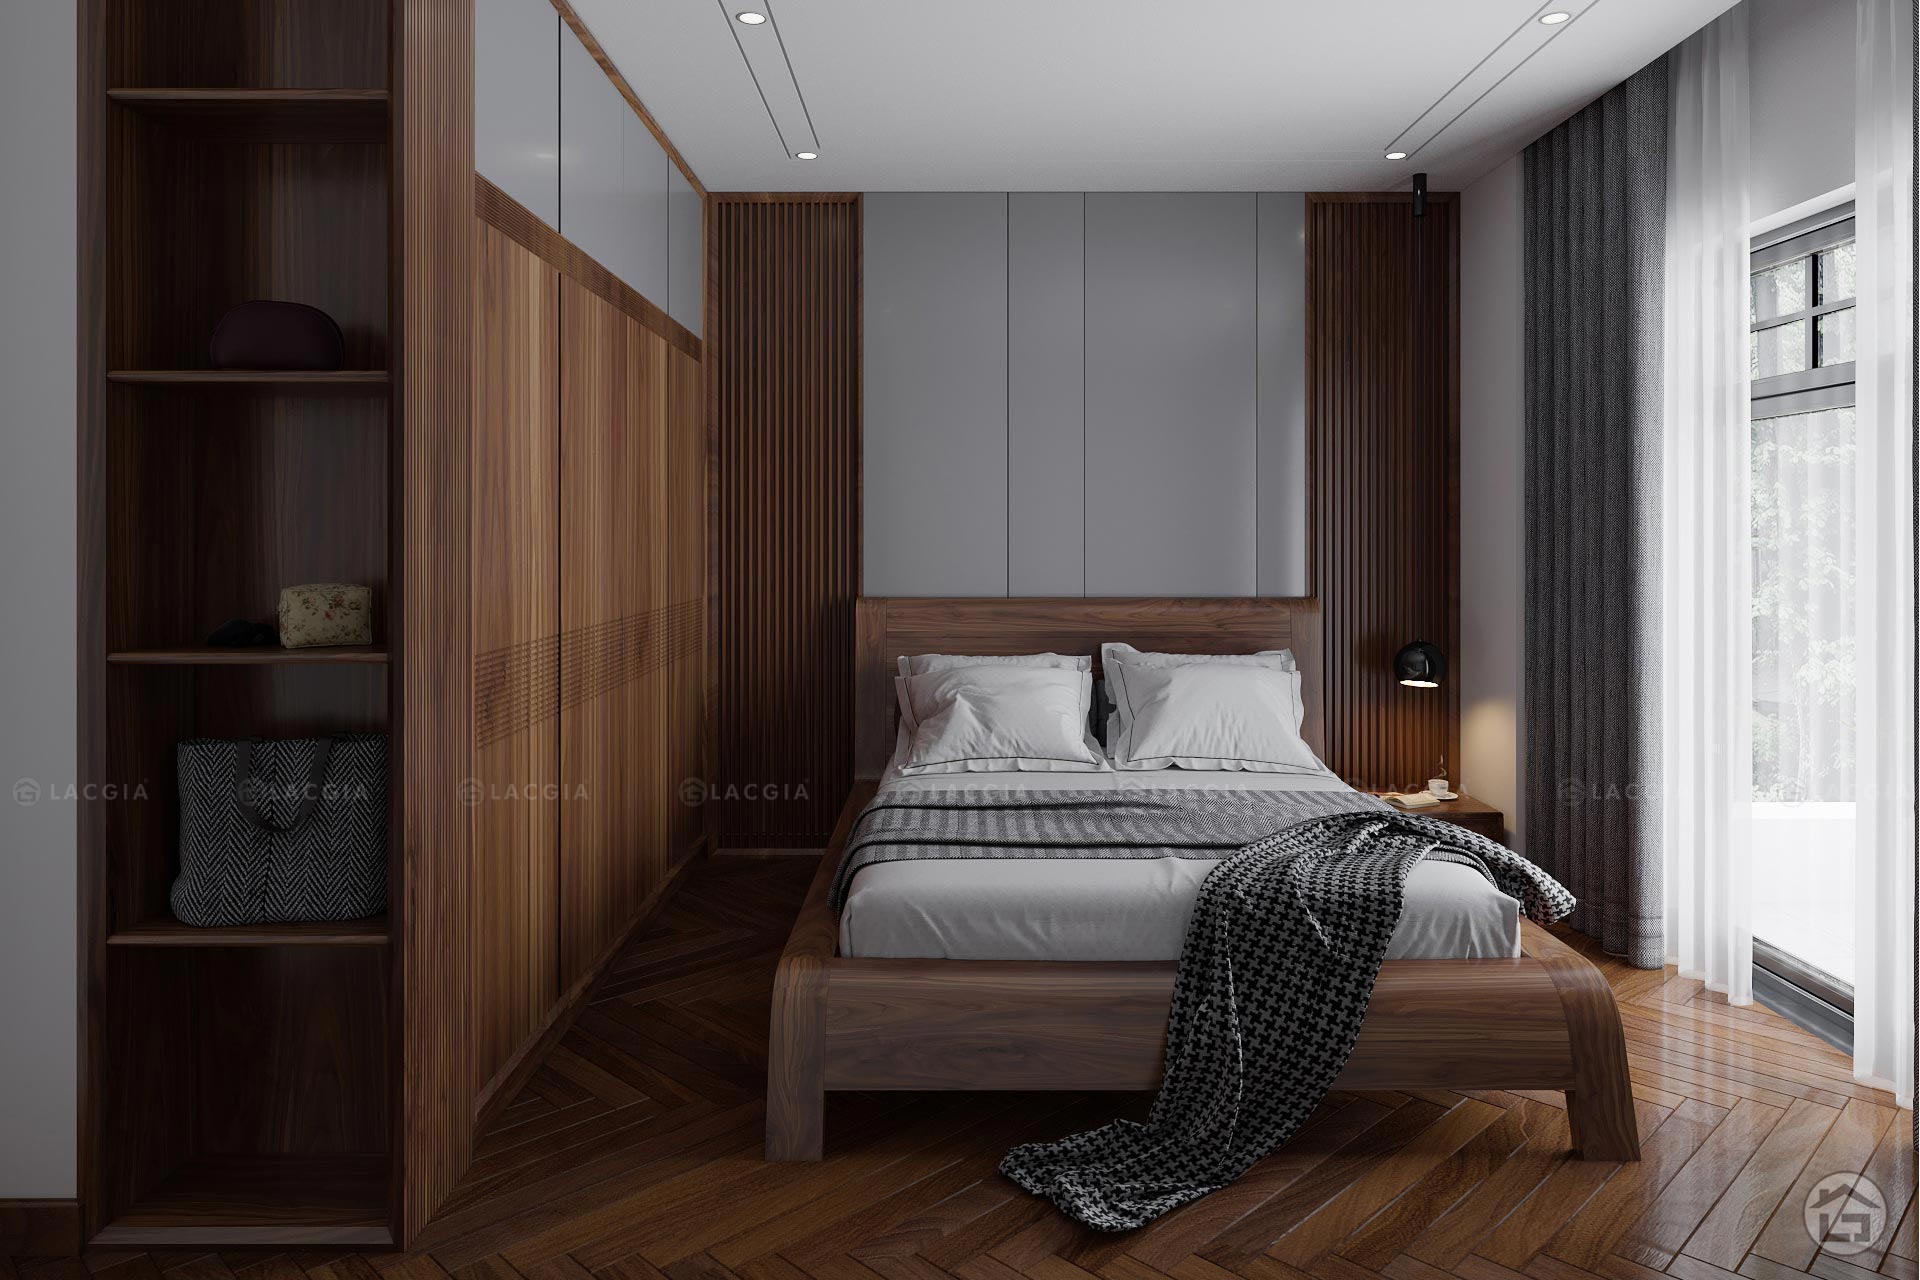 Giường ngủ gỗ hiện đại GN13 cho phòng ngủ sang trọng